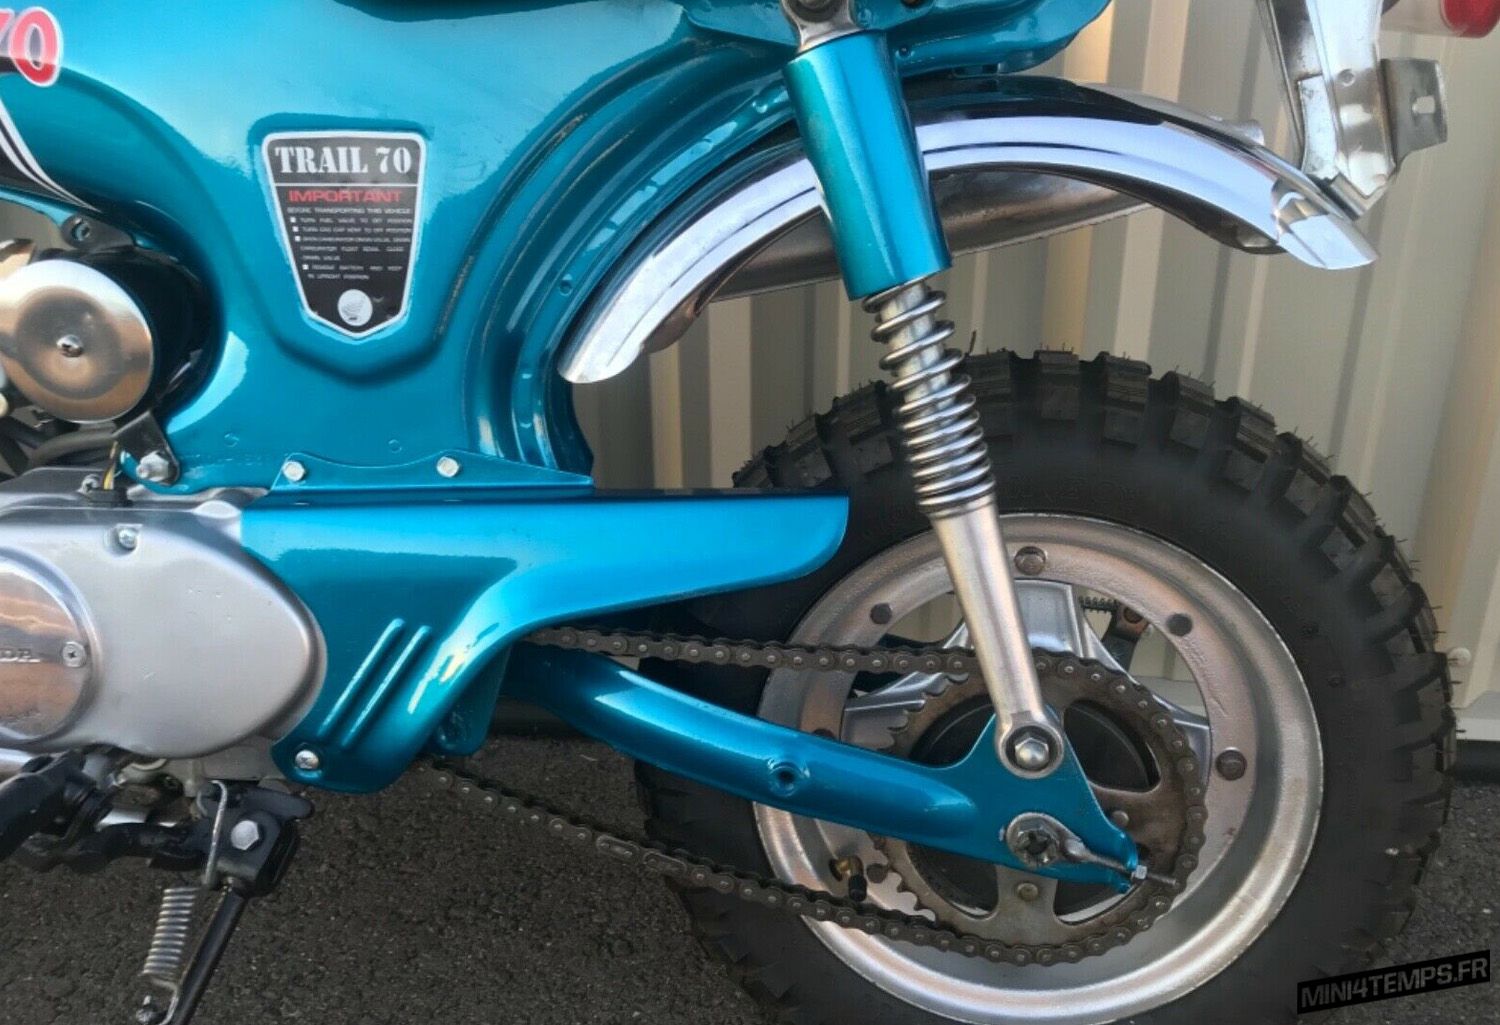 Le Honda Dax CT70 de Marquez Vintage Cycles - mini4temps.fr